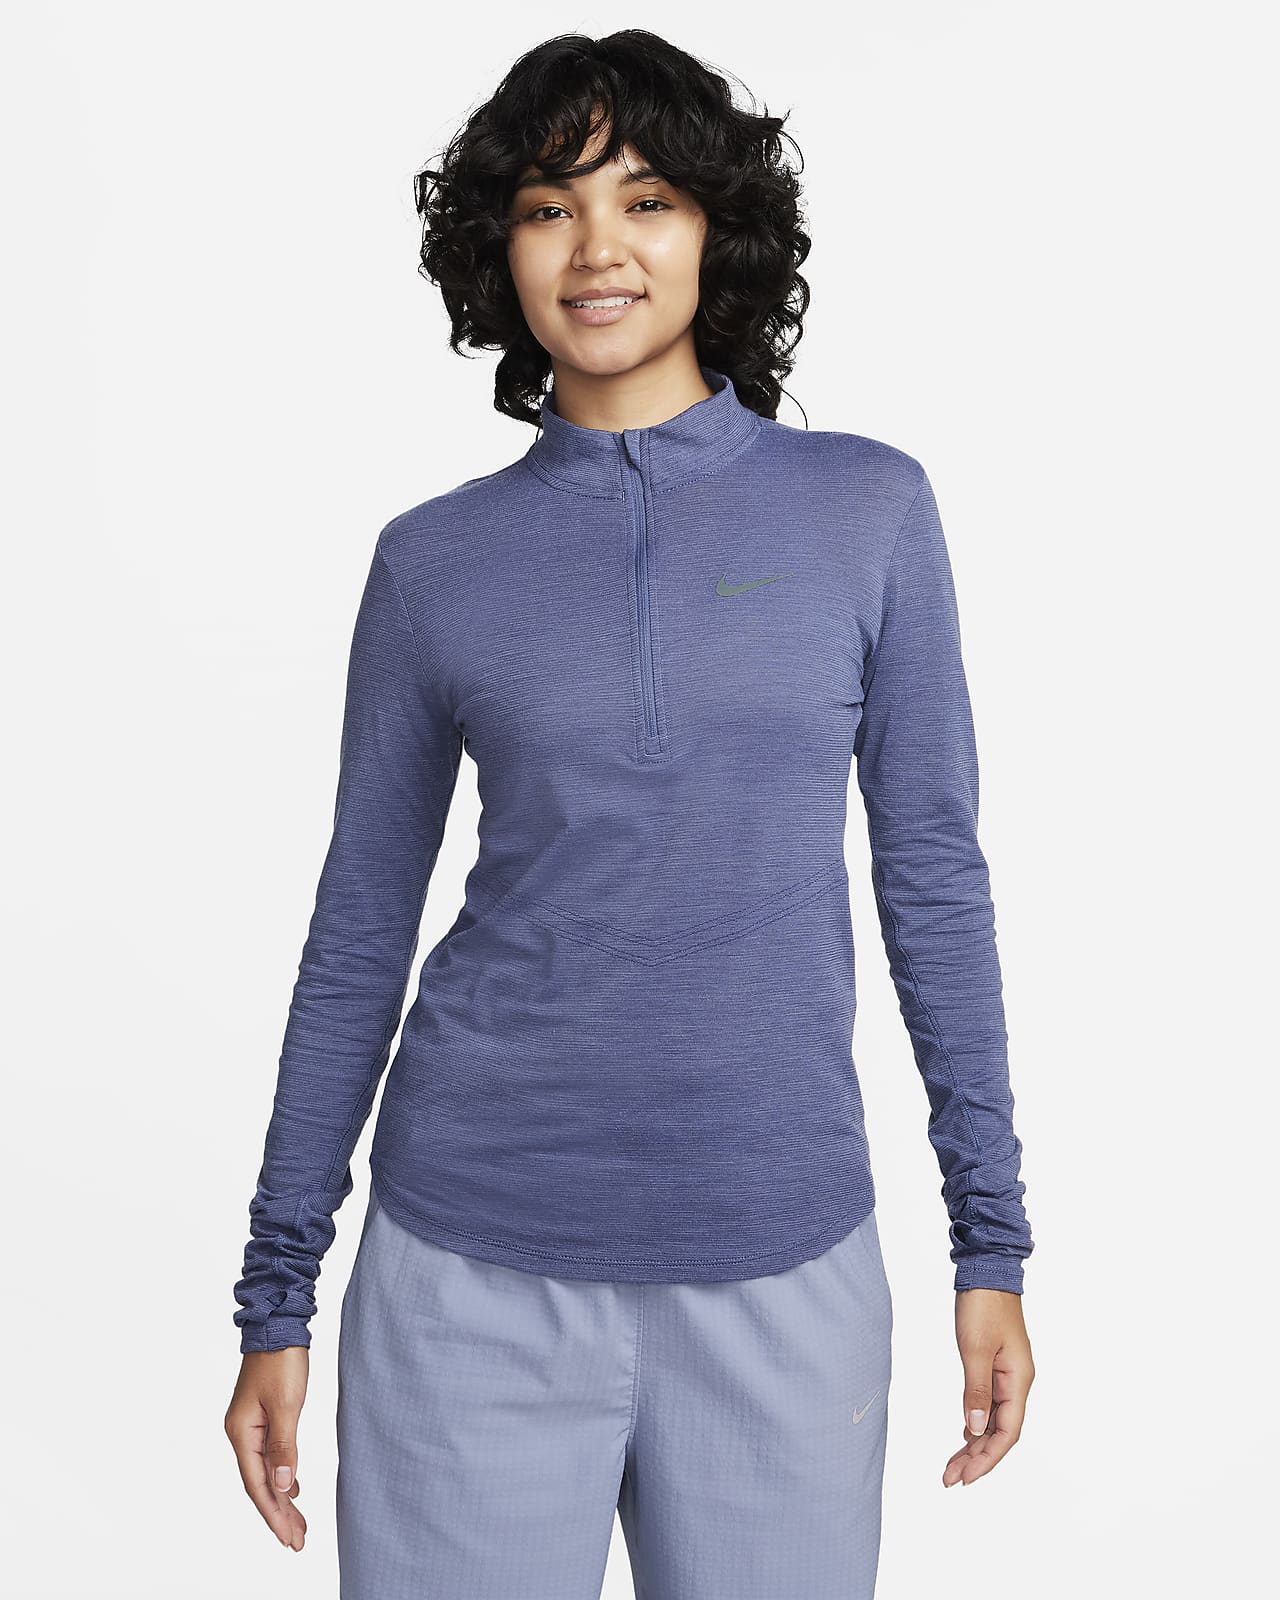 Damska koszulka z długim rękawem z wełny do biegania Nike Dri-FIT Swift